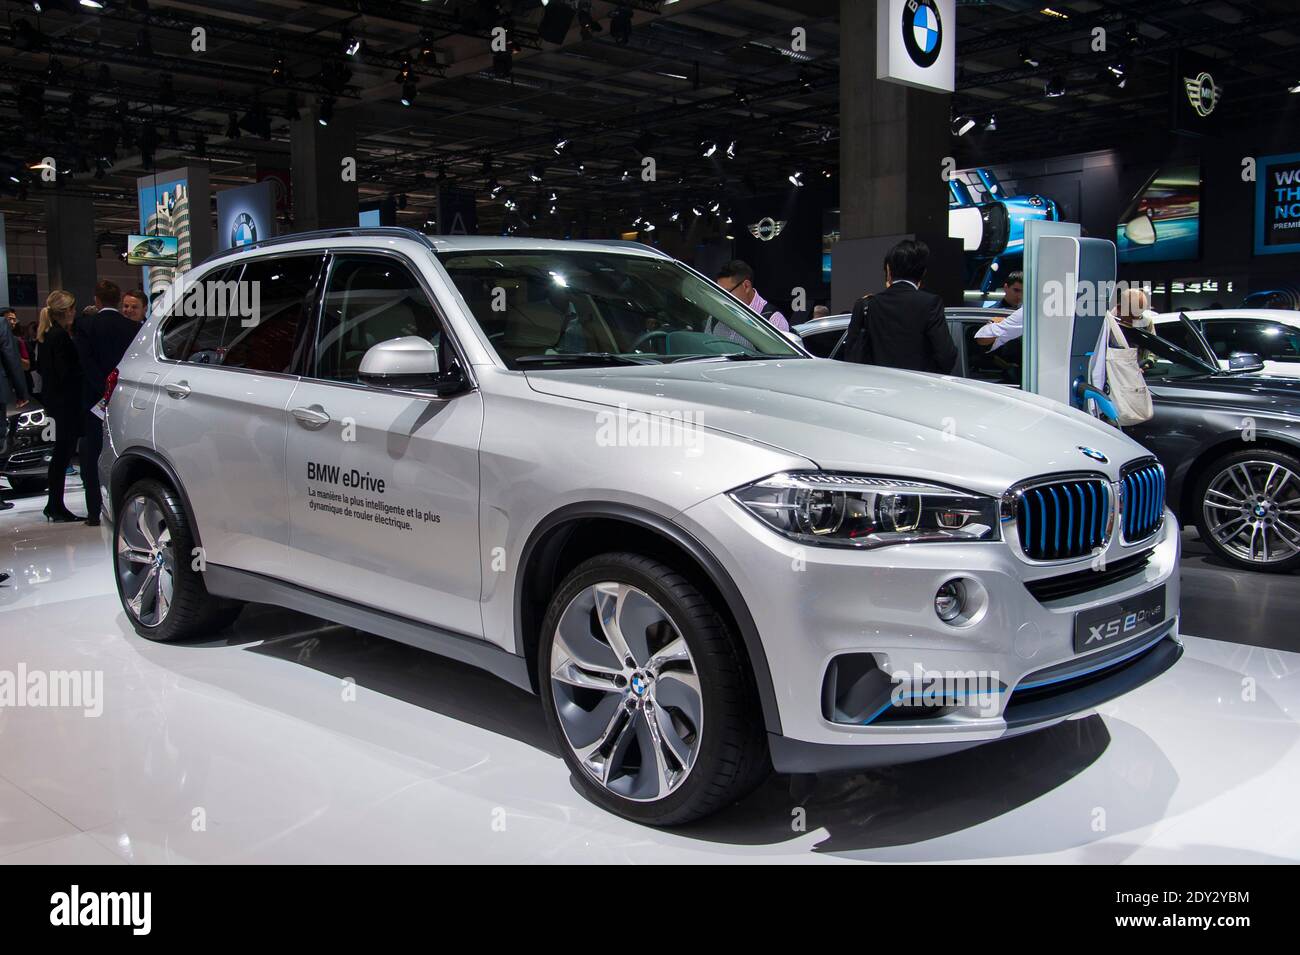 La nouvelle BMW X5 edrive lors du jour de presse du salon de l'automobile  de Paris, connu sous le nom de mondial de l'automobile à Paris, France, le  2 octobre 2014. Photo